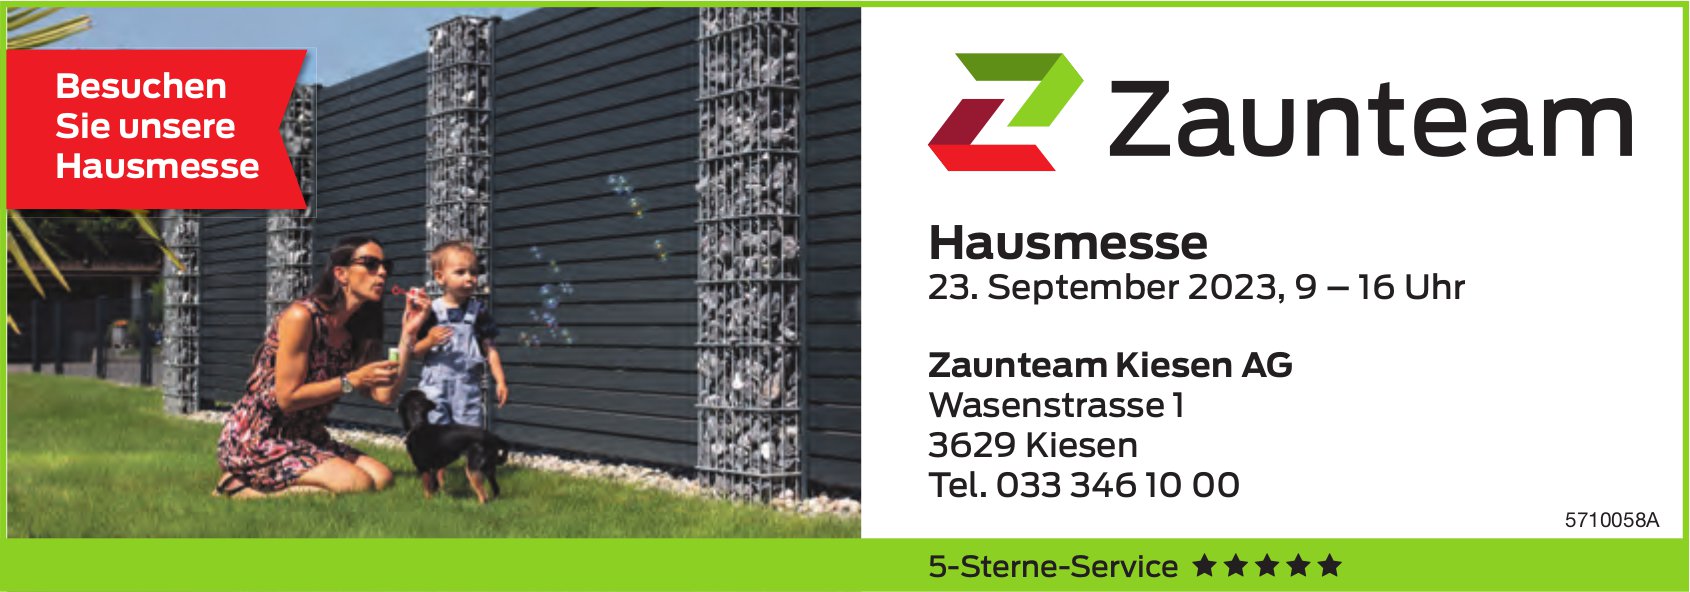 Hausmesse, 23. September, Zaunteam Kiesen AG